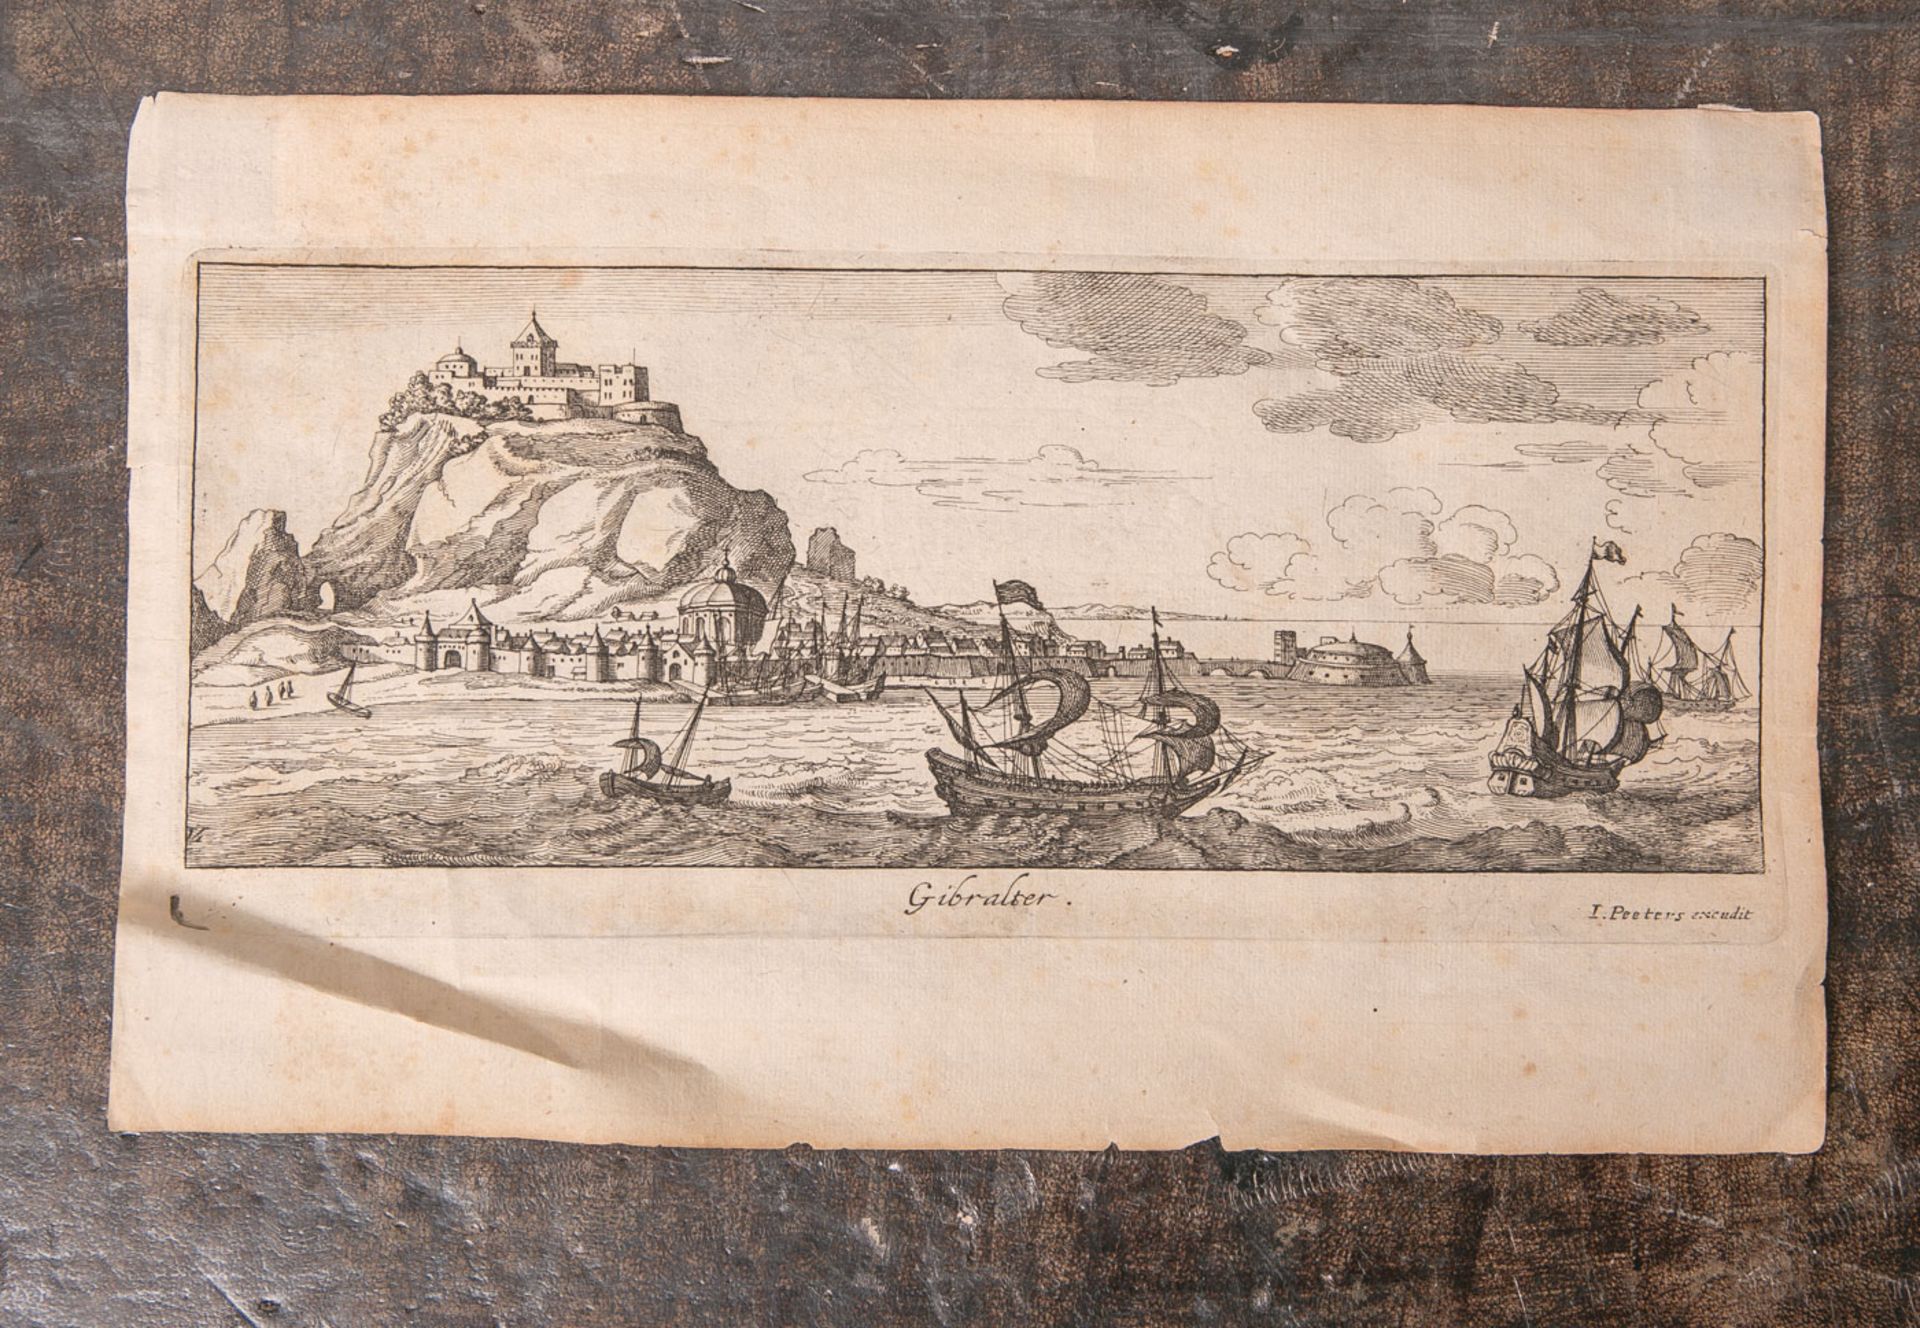 Peeters, Joh. (wohl 17./18. Jahrhundert), "Gibraltar", Kupferstich, Blattgröße ca. 17,5 x28 cm.